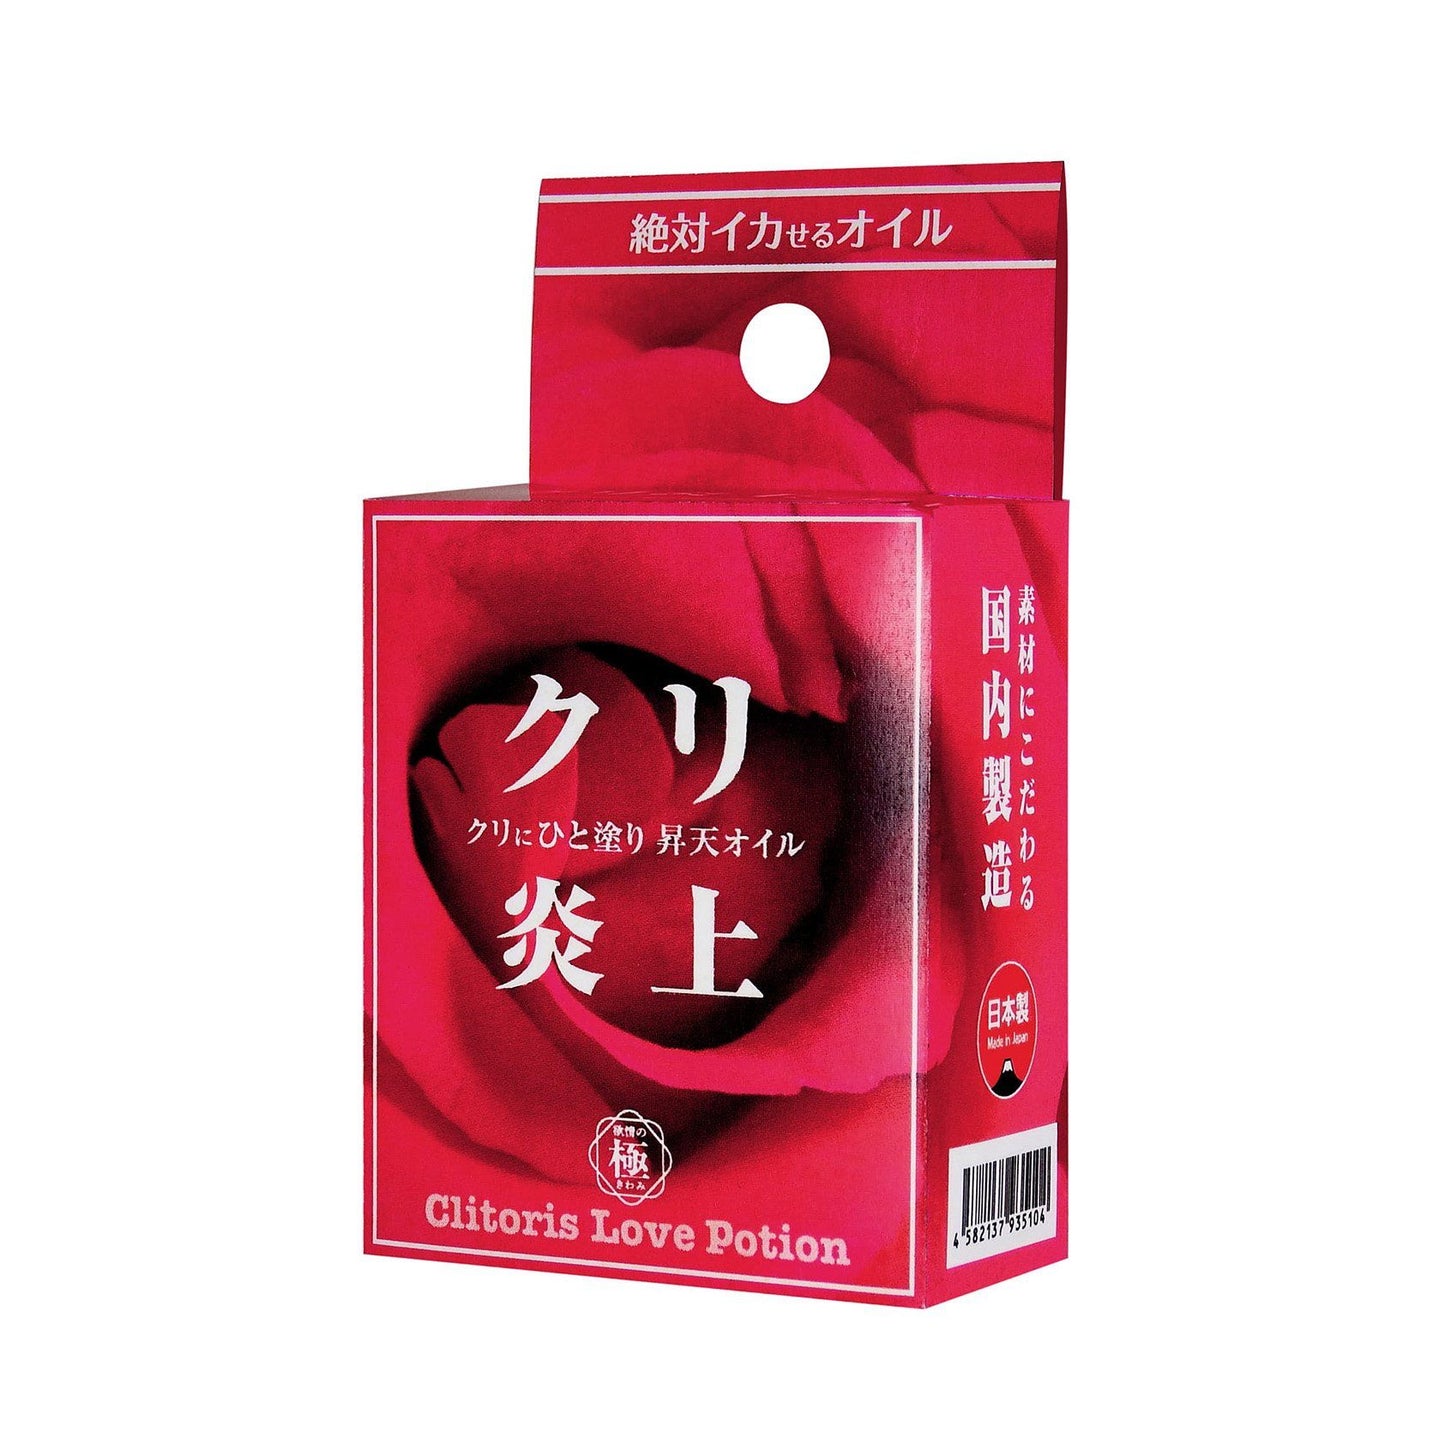 SSI JAPAN 陰蒂炎上 慾情の極 安息香 陰蒂刺激精油 5 毫升 高潮興奮液 購買